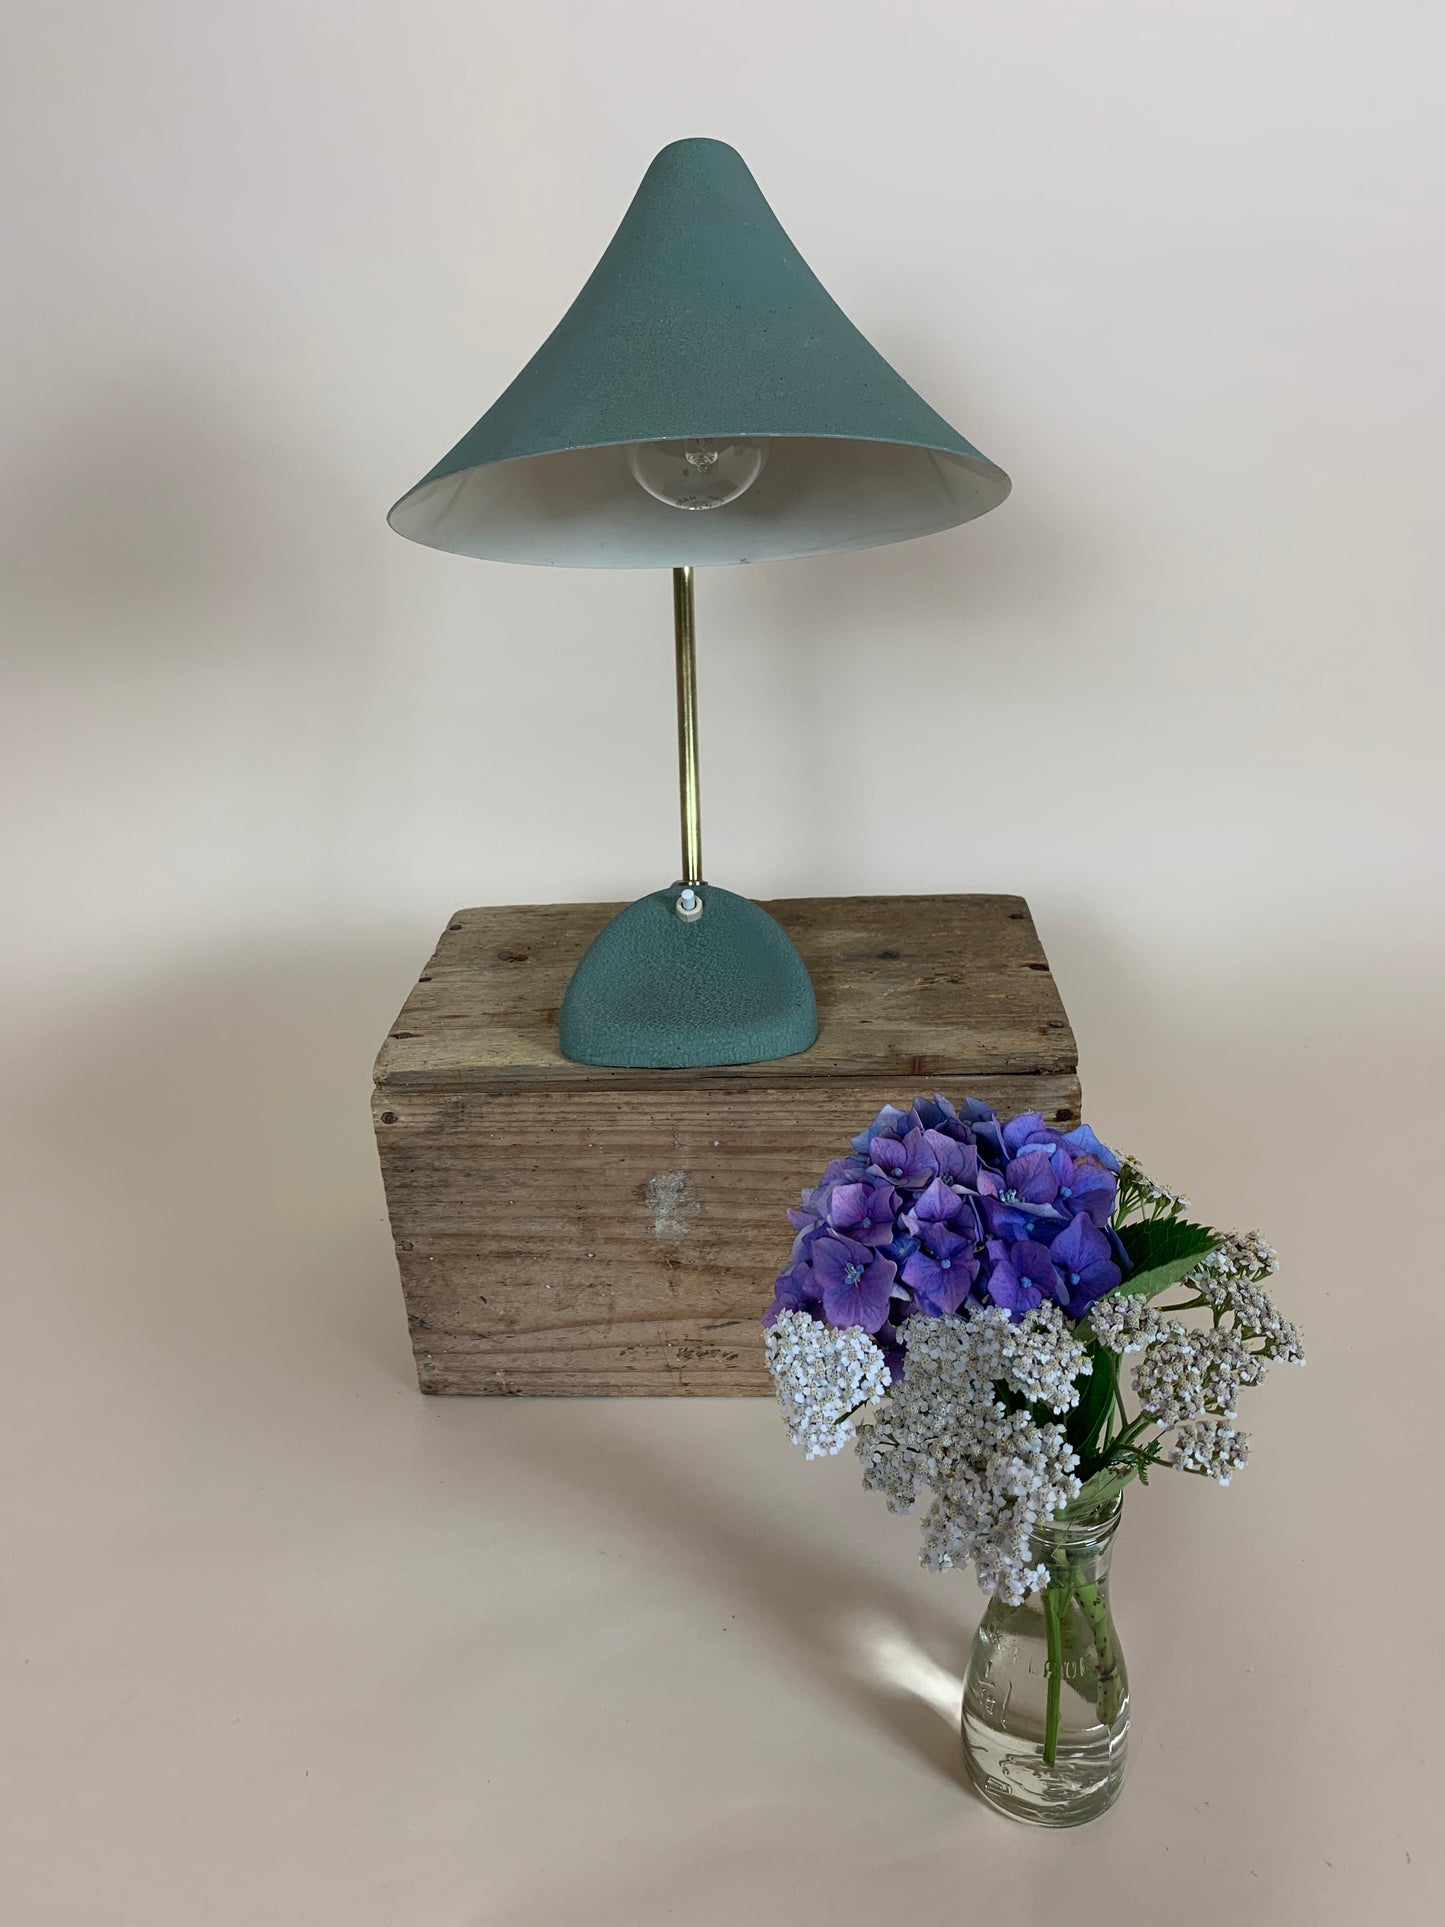 Schöne kleine Louis Kalff Vintage Lampe in Grün mit Messing